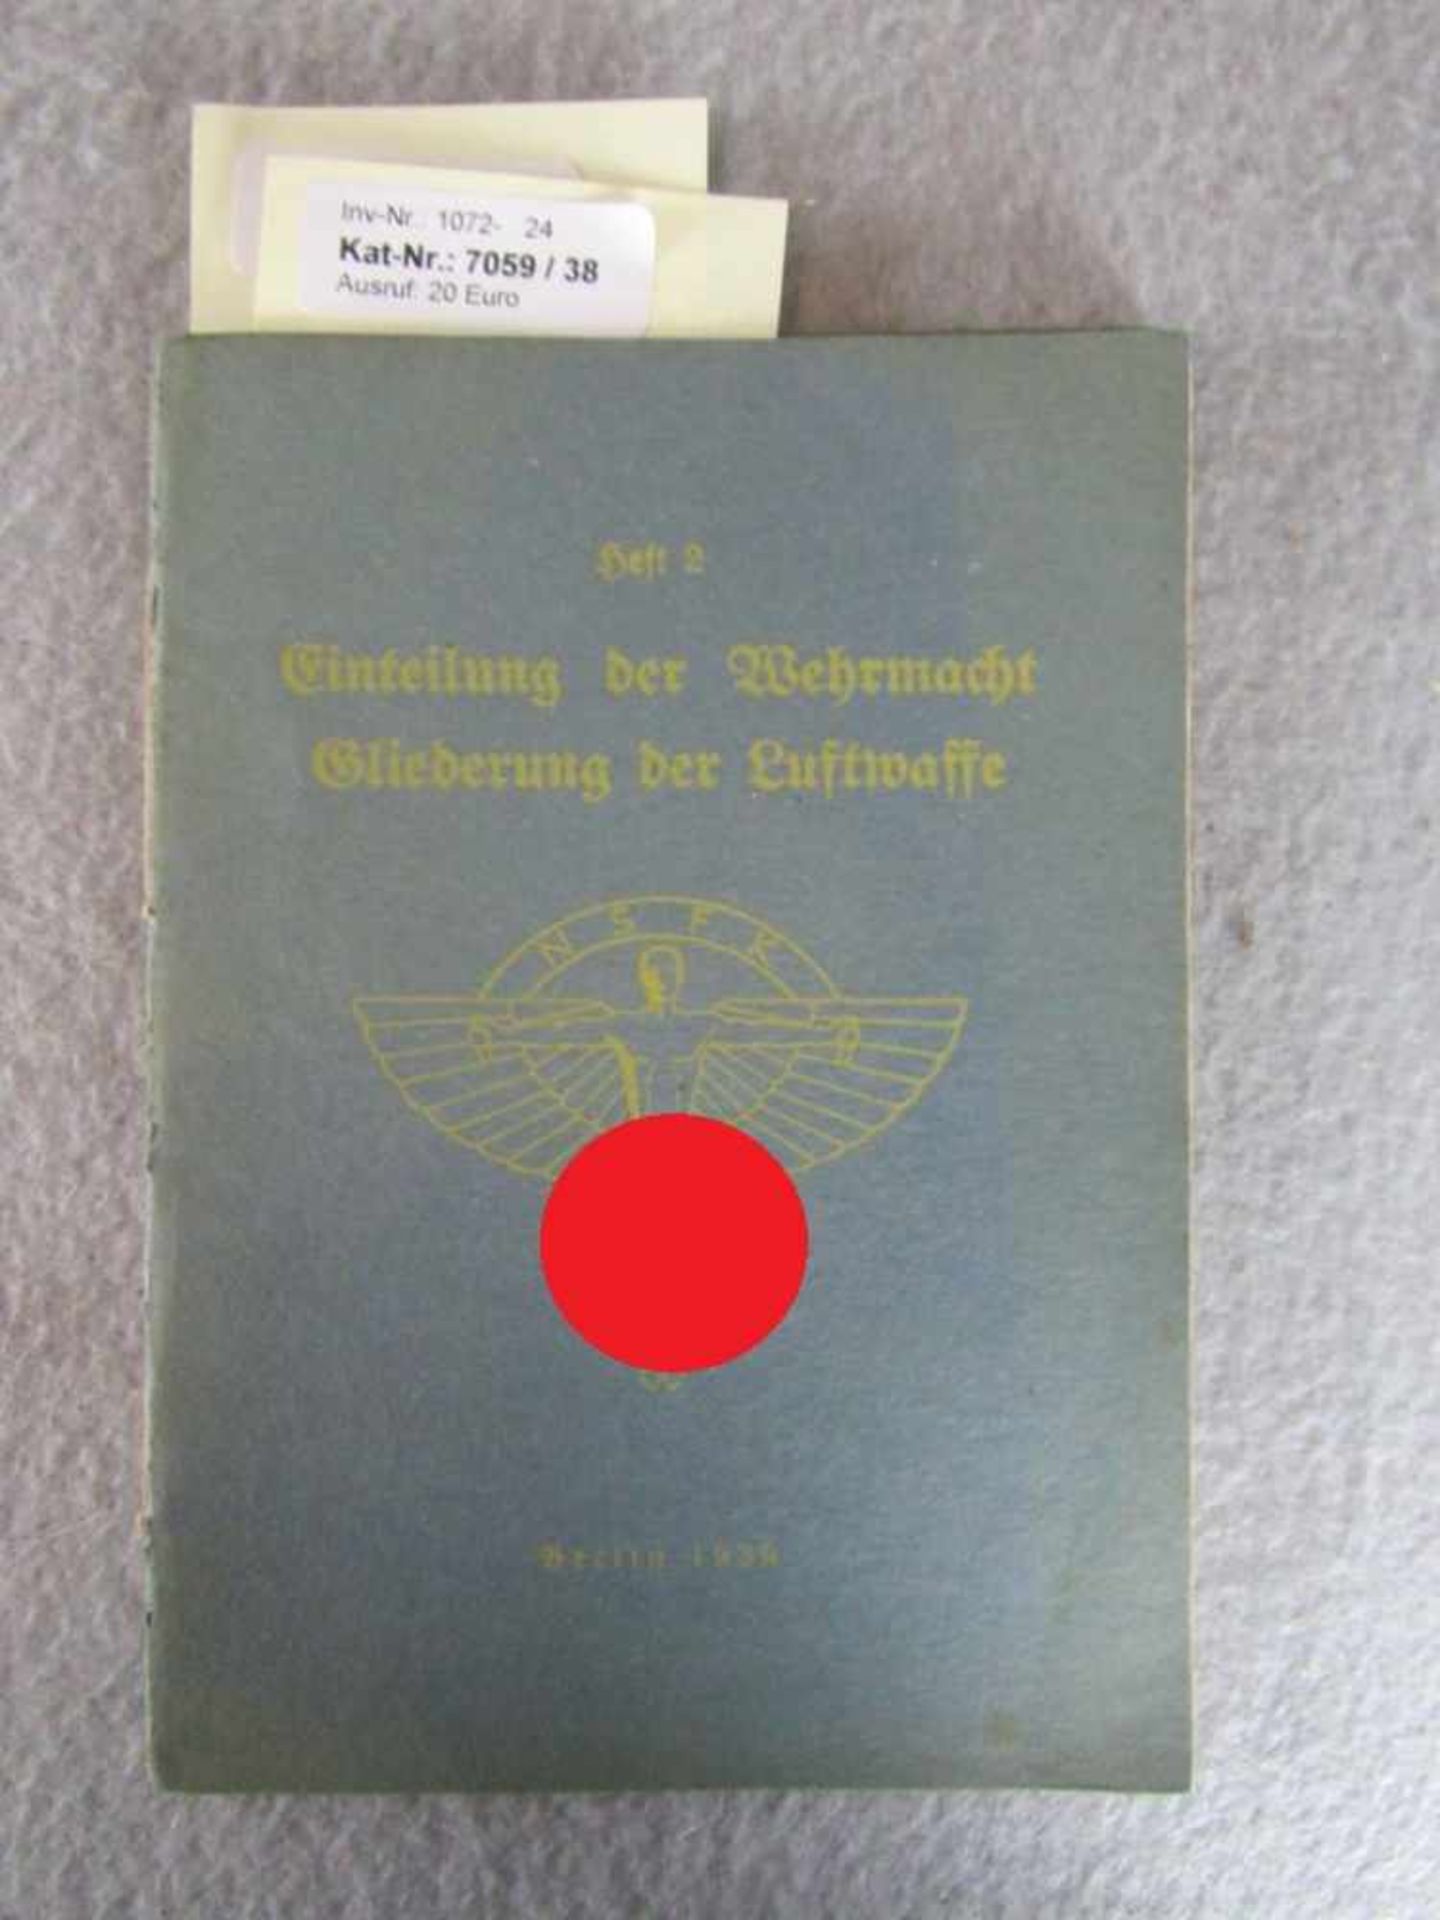 Buch Heft 2. Wk NSFK hier : Teil 2 Erweiterrung der Wehrmacht und gliederrung der Luftwaffe